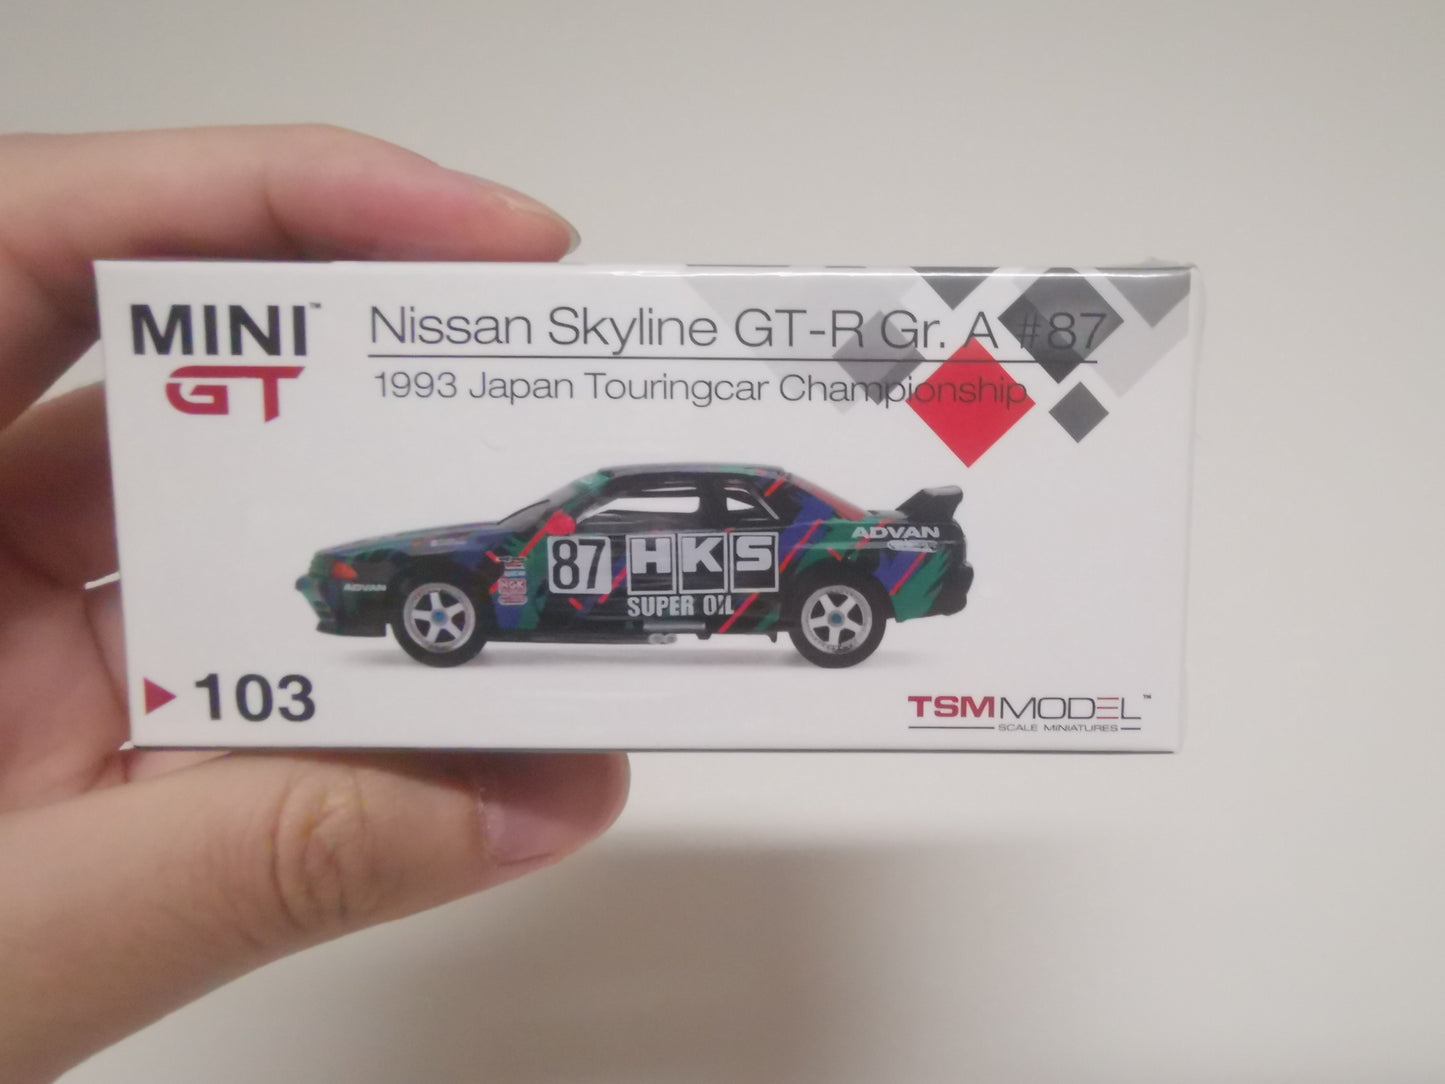 MiniGT #103 1:64 Nissan GT-R R32 Gr.A No.87 HKS 1993 JTC